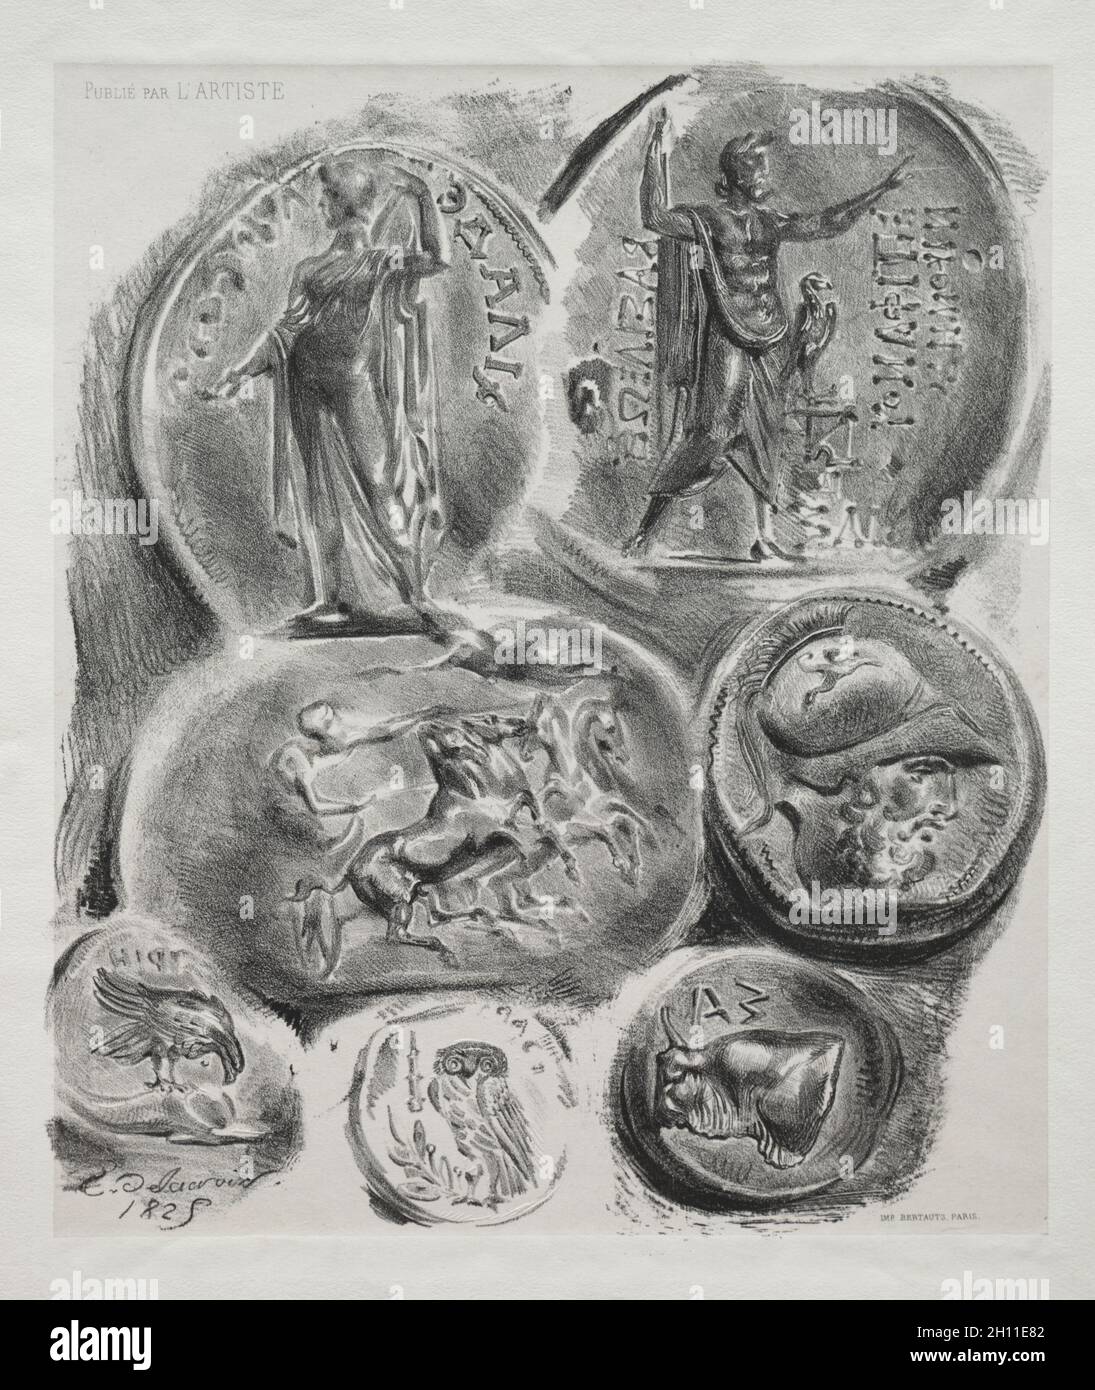 Feuille avec sept médailles anciennes, 1825.Eugène Delacroix (français, 1798-1863), l'artiste.Lithographie avec colé de chine; feuille: 36 x 27.5 cm (14 3/16 x 10 13/16 po.); image: 26.8 x 23 cm (10 9/16 x 9 1/16 po.). Banque D'Images